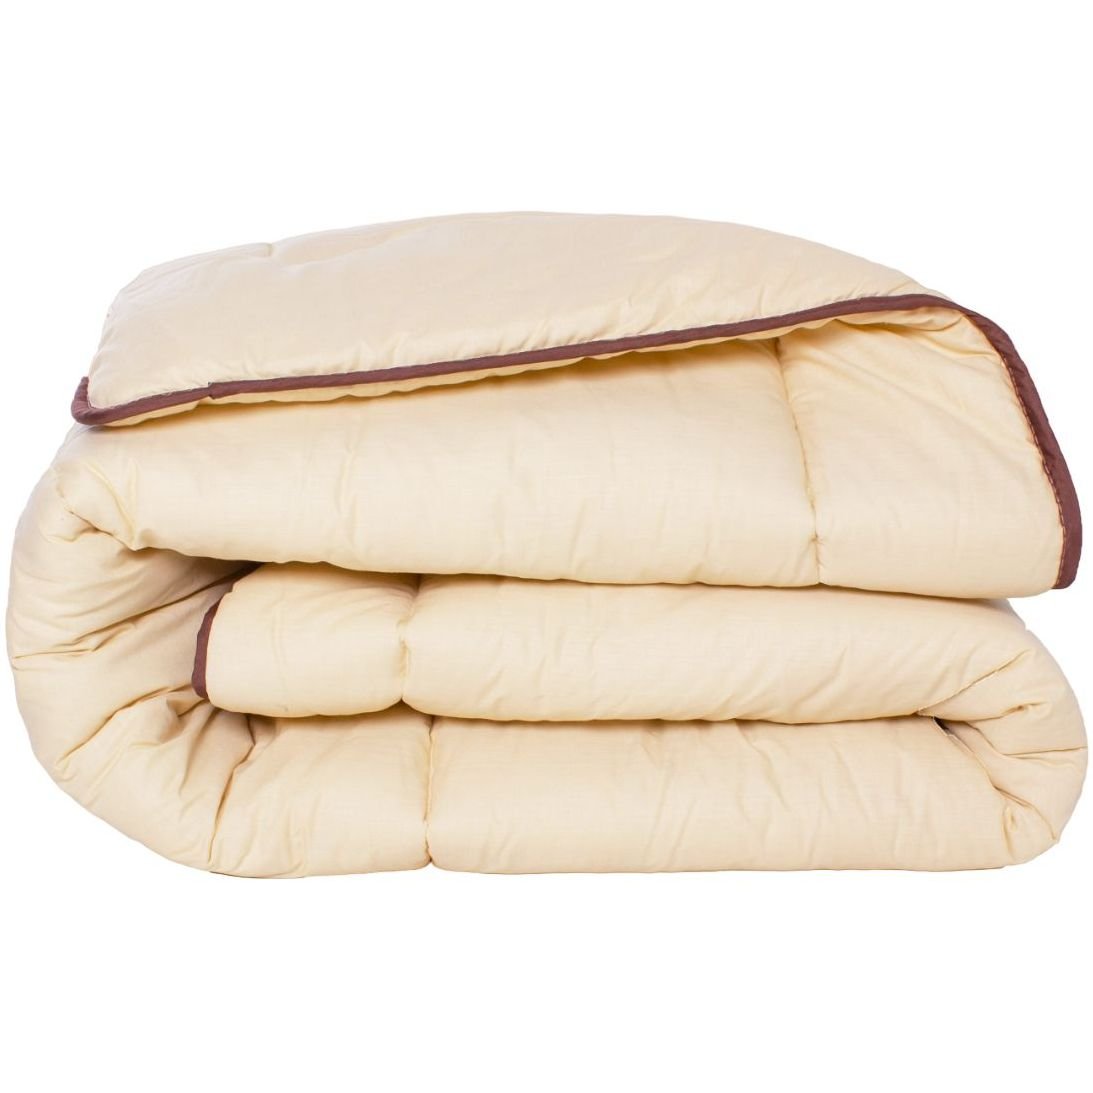 Одеяло шерстяное MirSon Carmela №0335, зимнее, 200x220 см, бежевое - фото 1